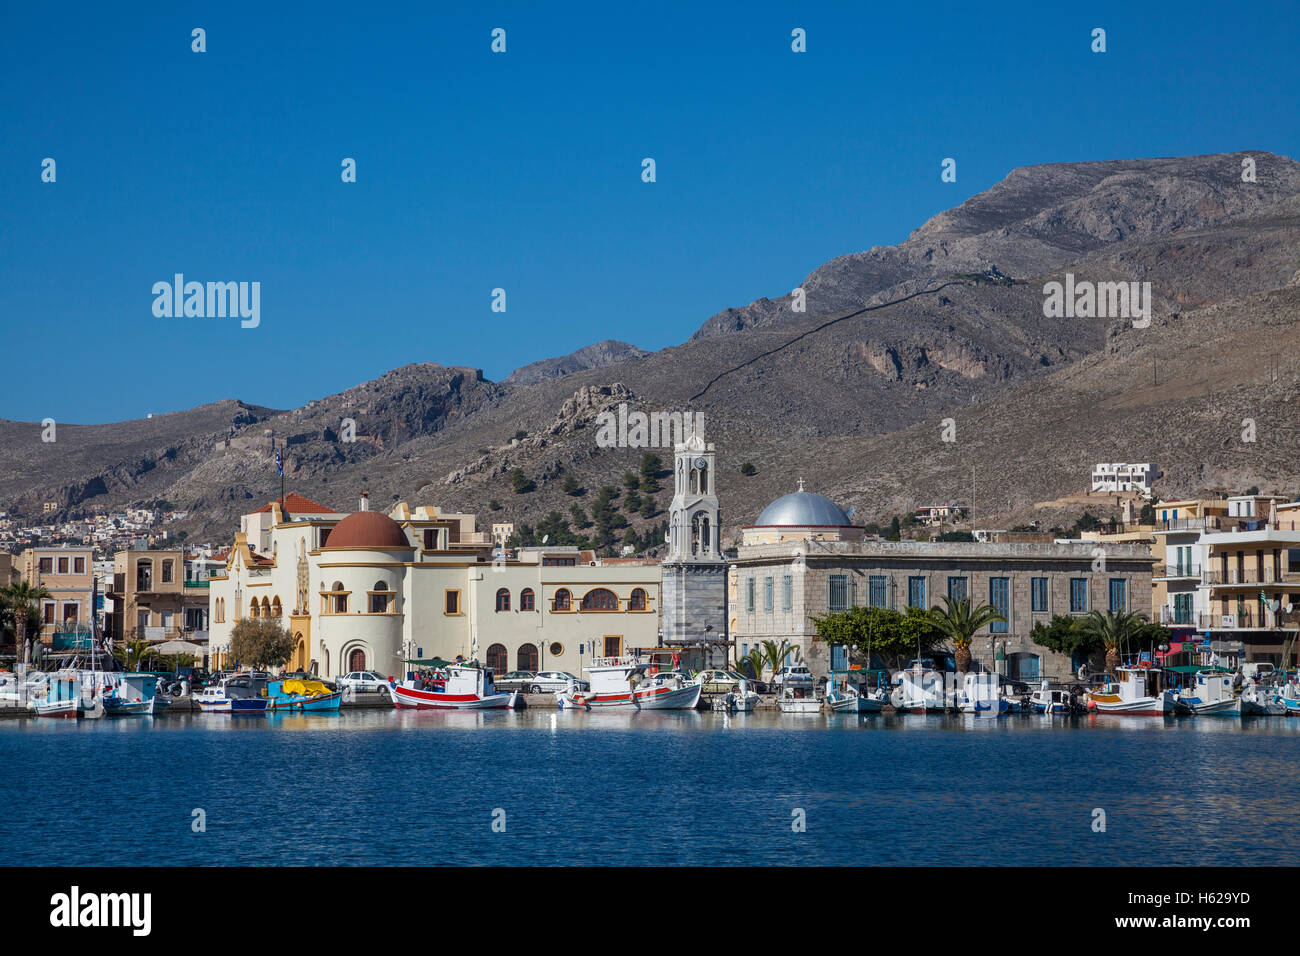 Port-Potia Hauptstadt von Kalymnos / Kalimnos Insel im Mittelmeer, Griechenland. Stockfoto